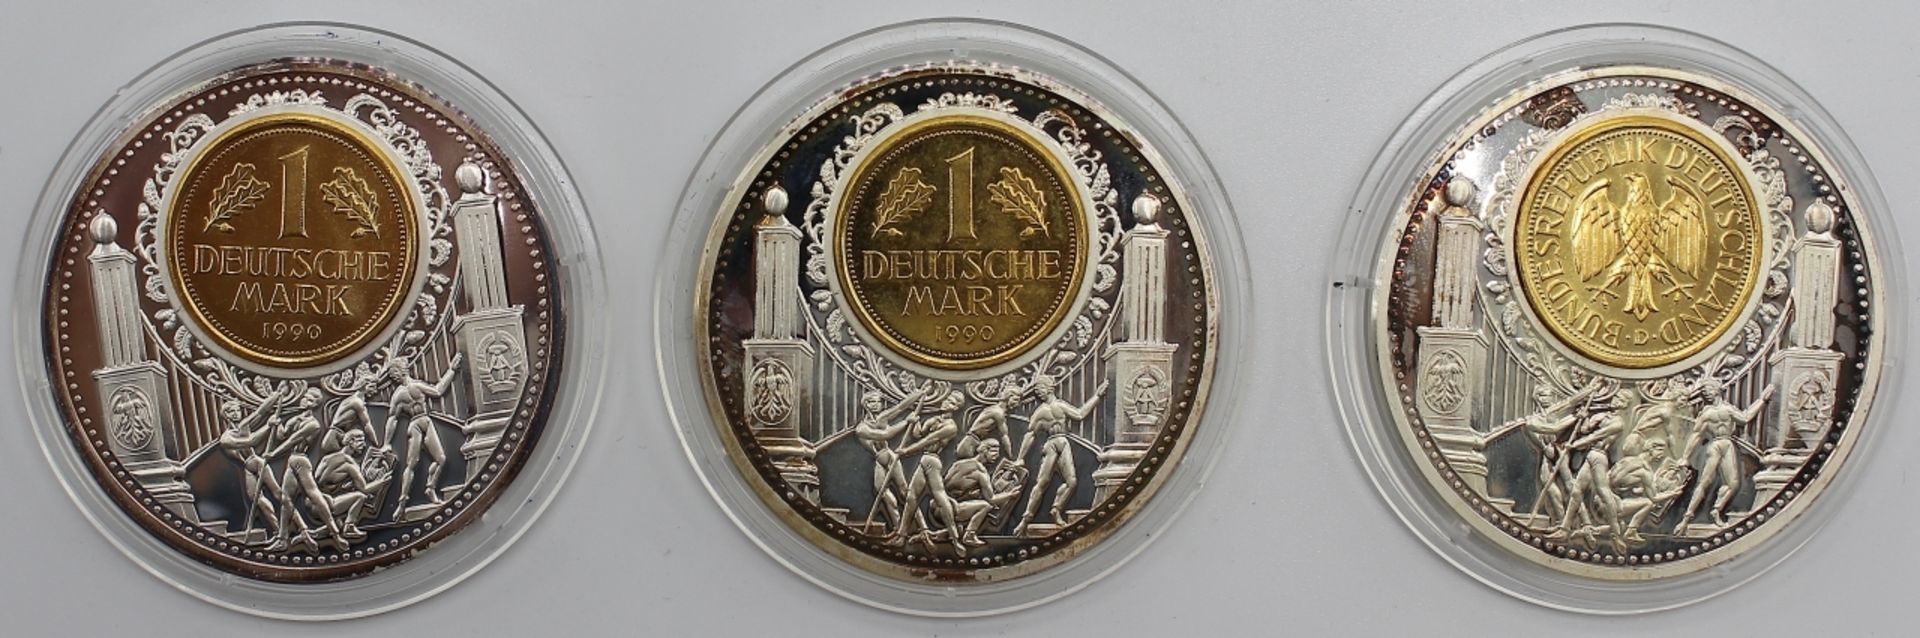 Lot von 3 Silbermedaillen Sonderprägung, Auflage 20000, Silber 999, 50 mm, 40 Gramm, mit Original